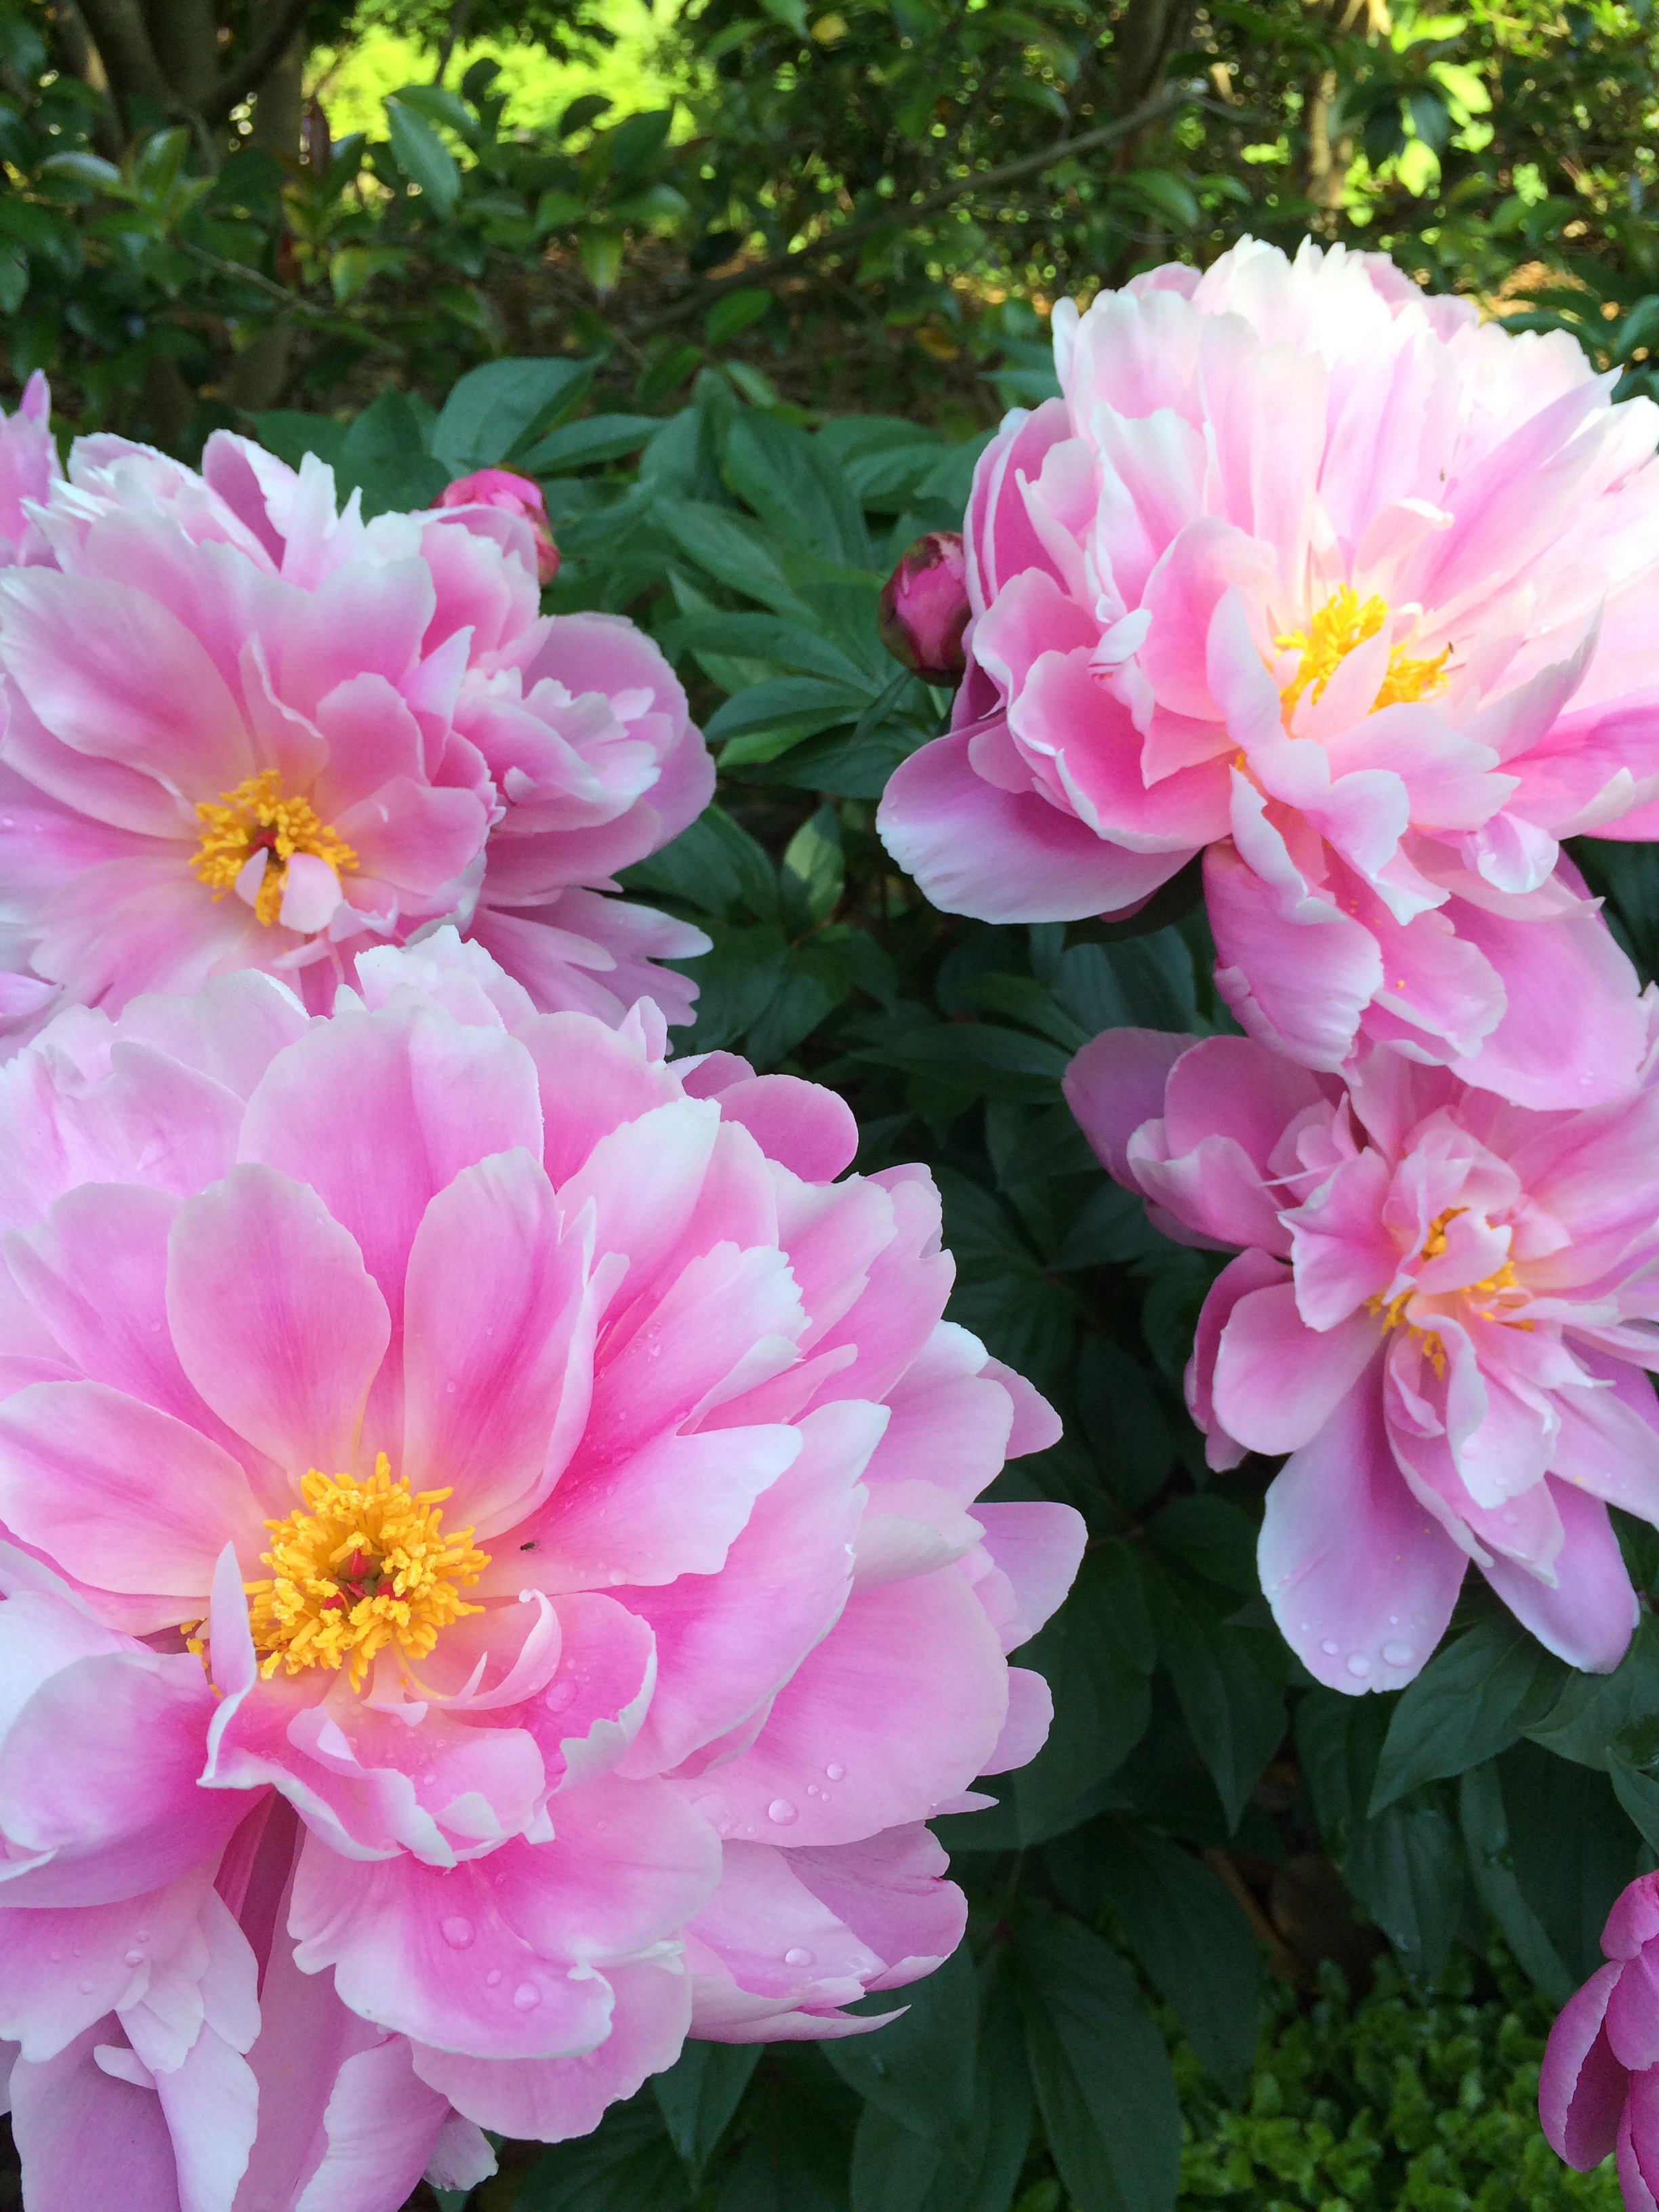 Knockout Blooms: Peonies - Lewis Ginter Botanical Garden